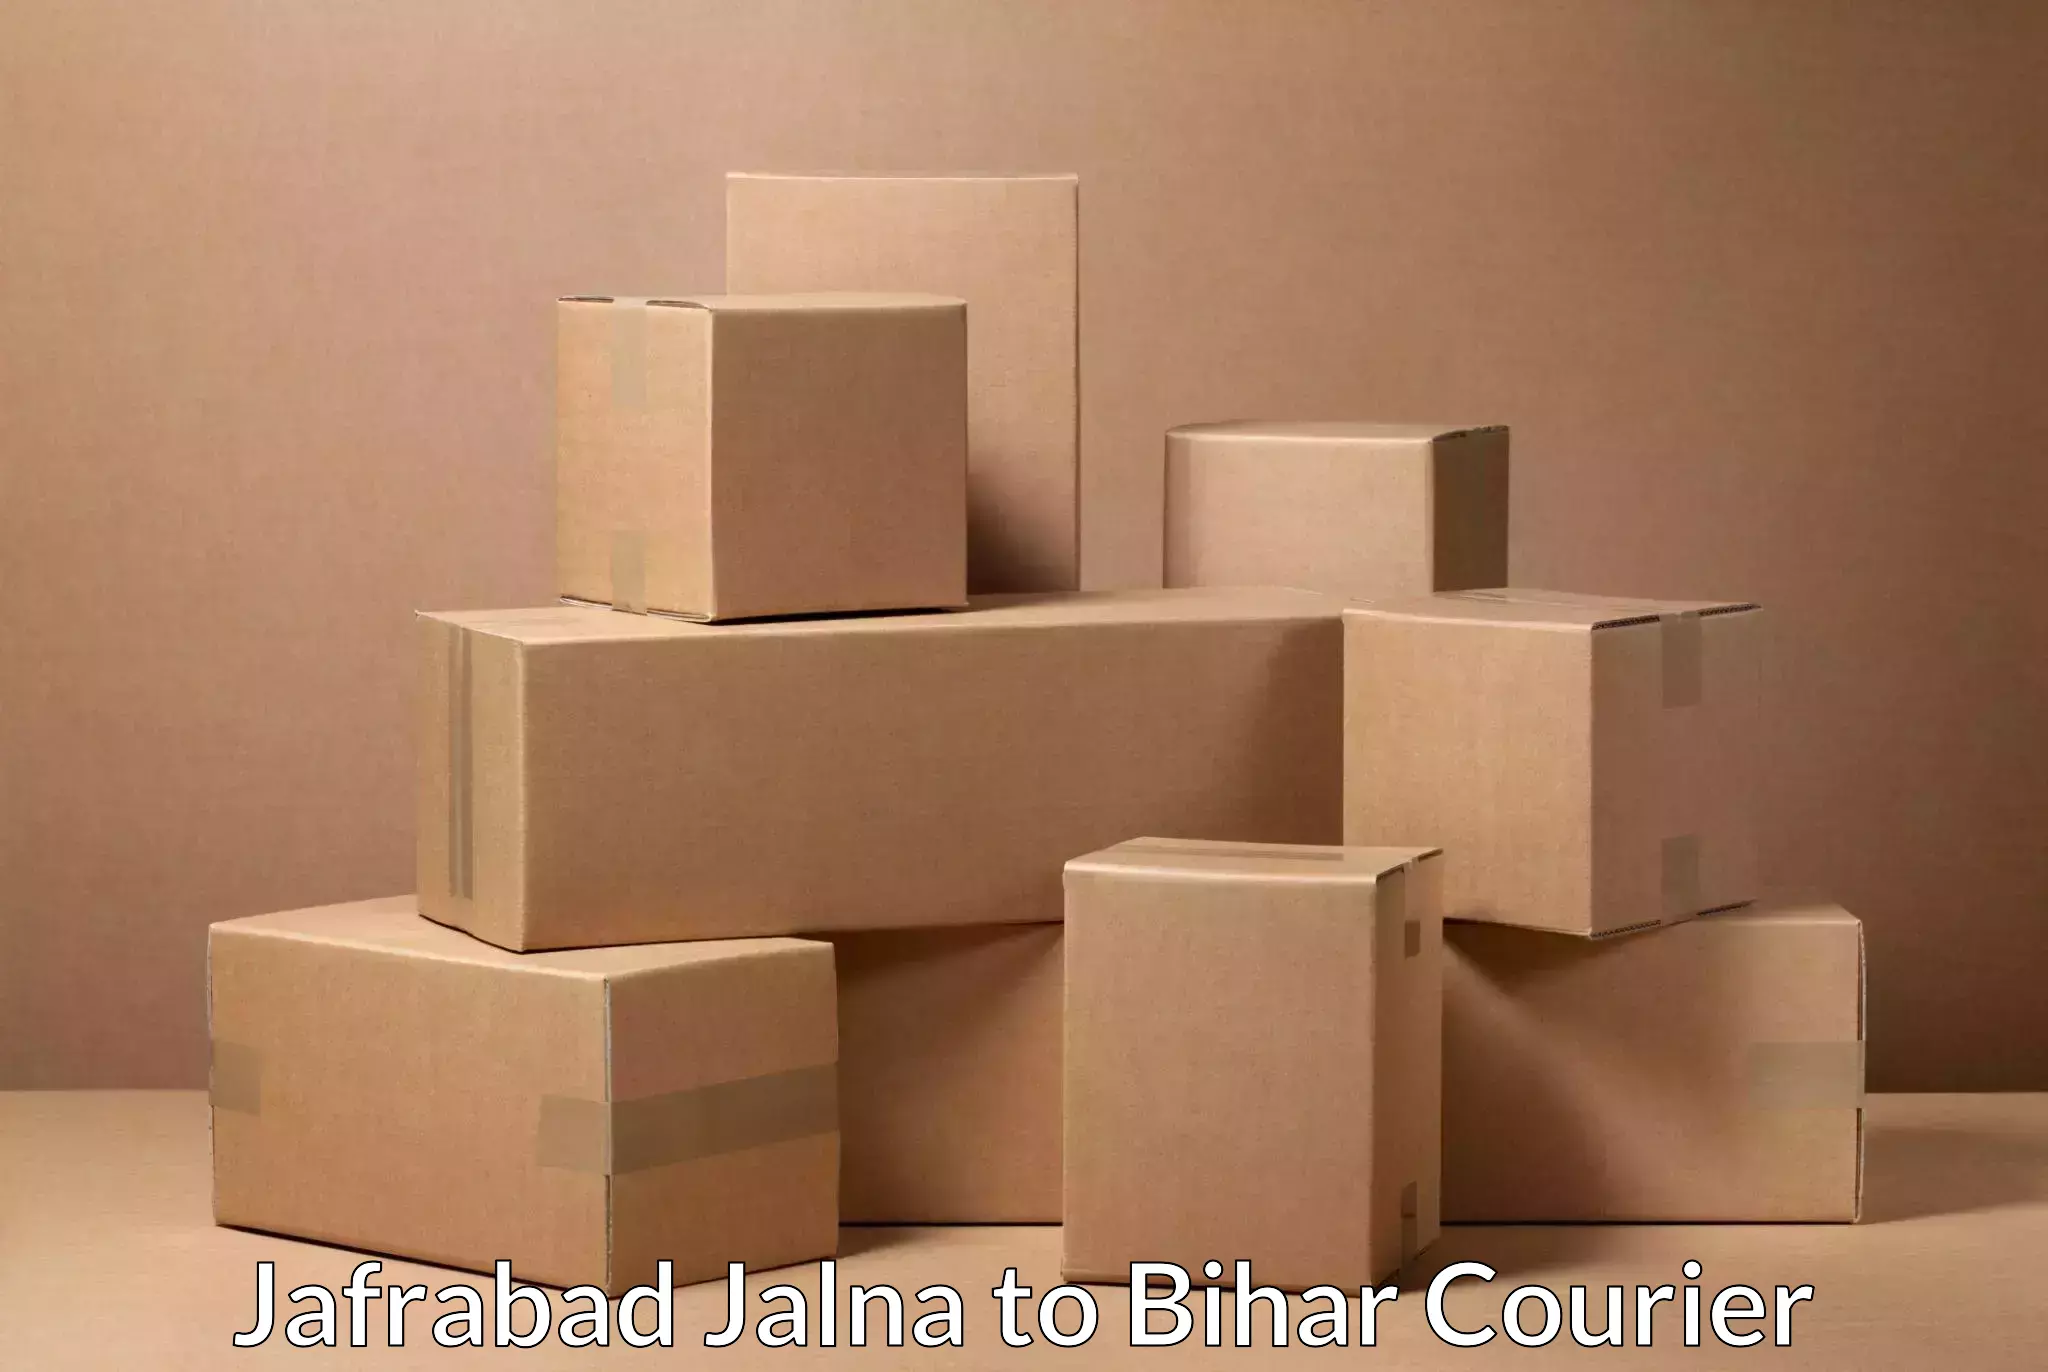 Door-to-door freight service Jafrabad Jalna to Barhiya